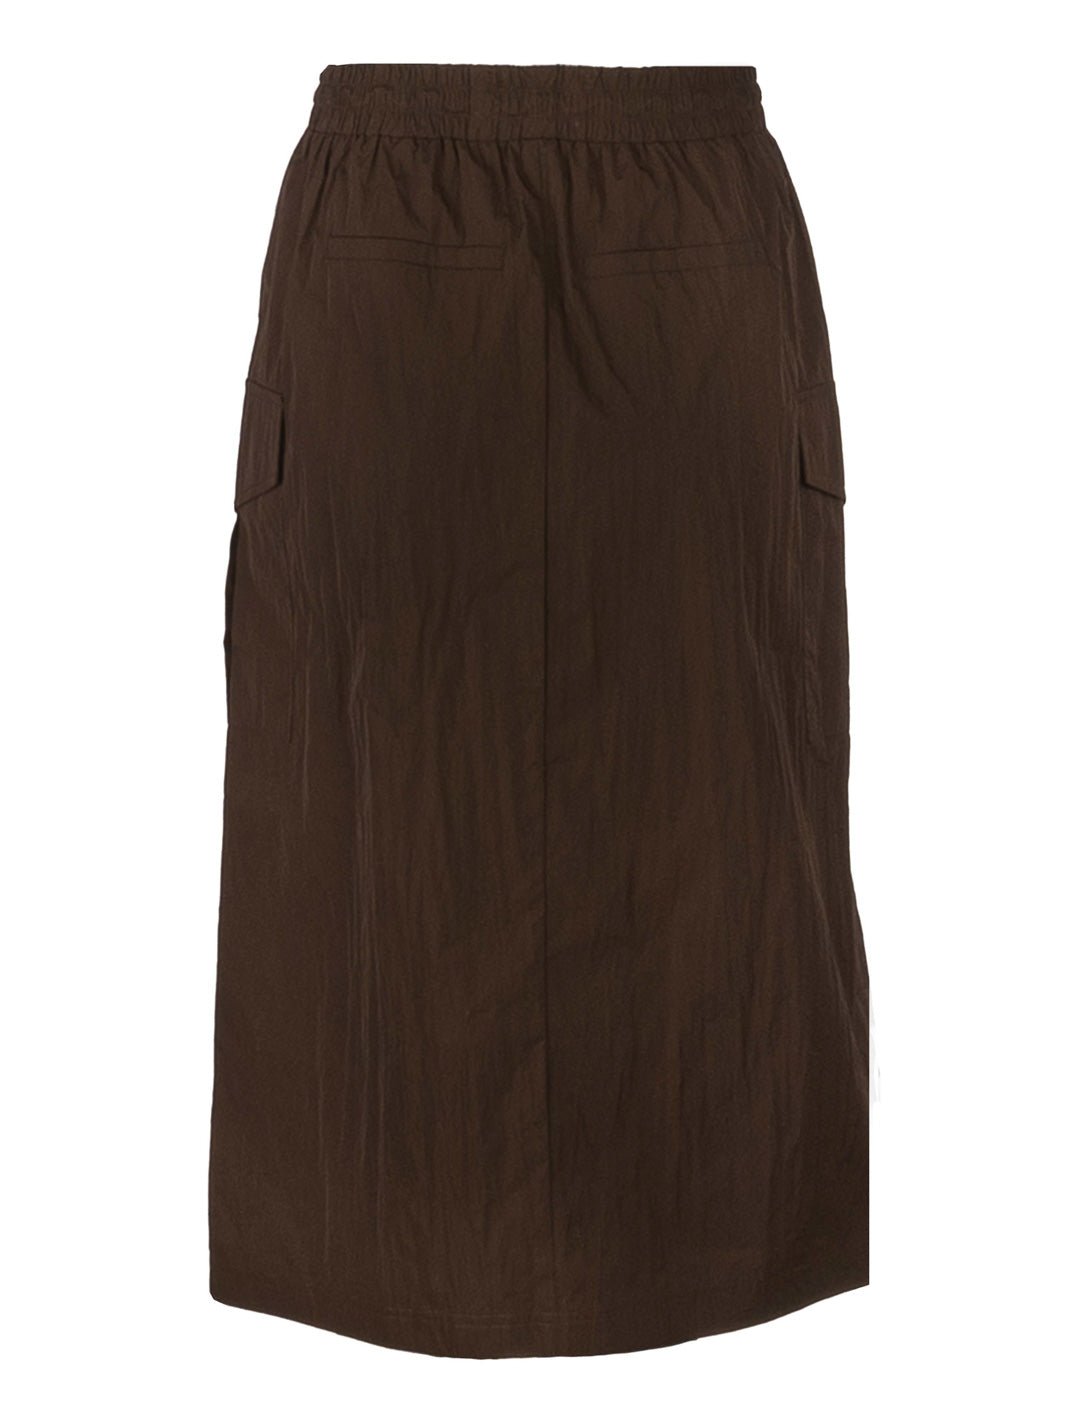 Liberté Fia long cargo skirt dark brown - Online-Mode